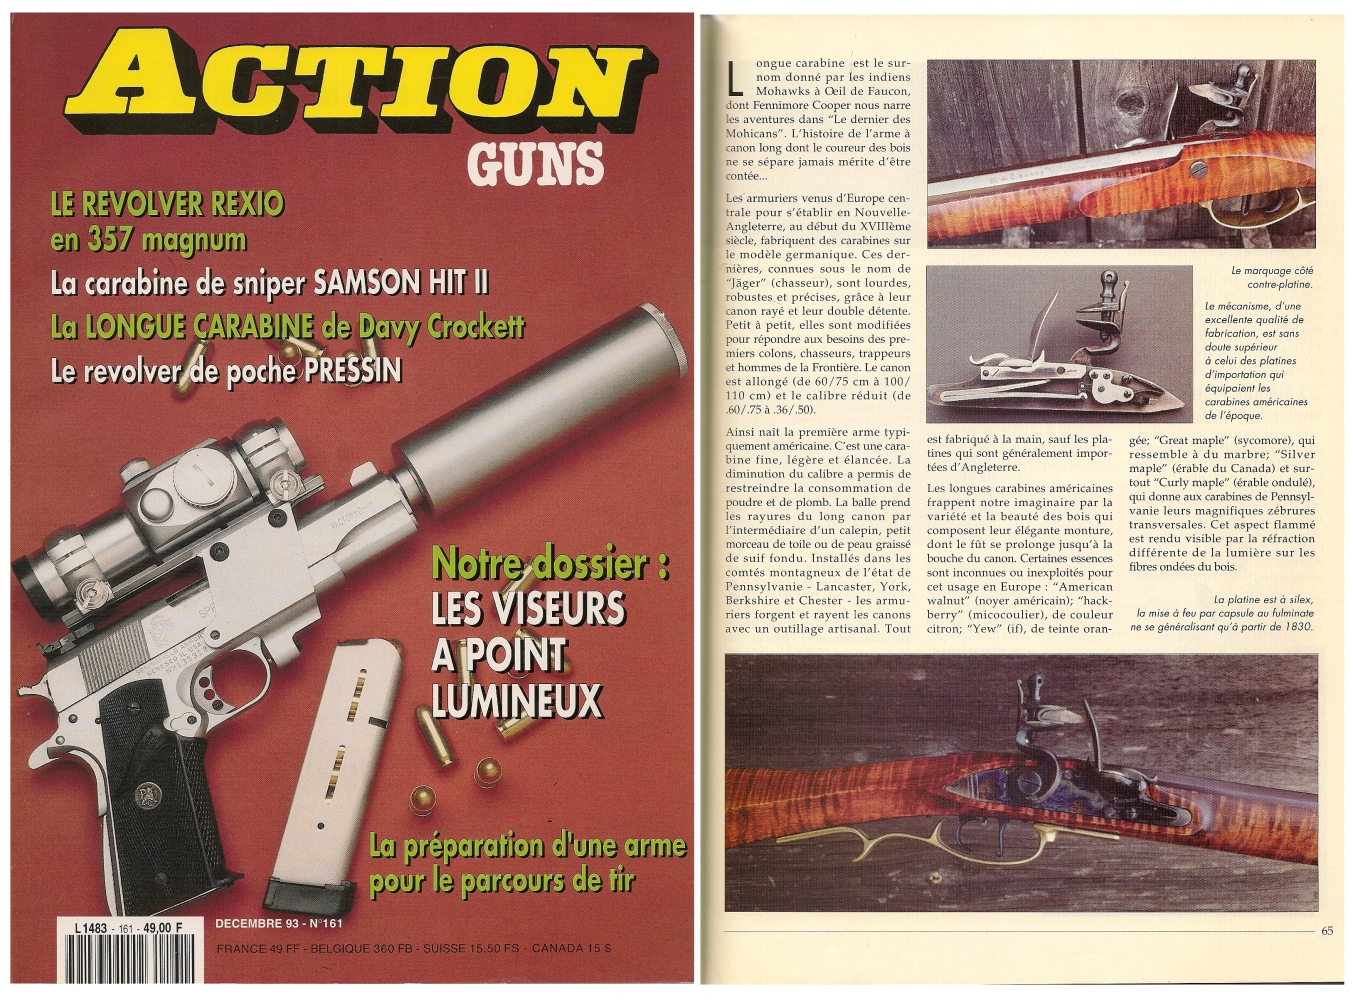 Le banc d’essai de la réplique de carabine à silex « Frontier » a été publié sur 5 pages dans le magazine Action Guns n° 161 (décembre 1993).